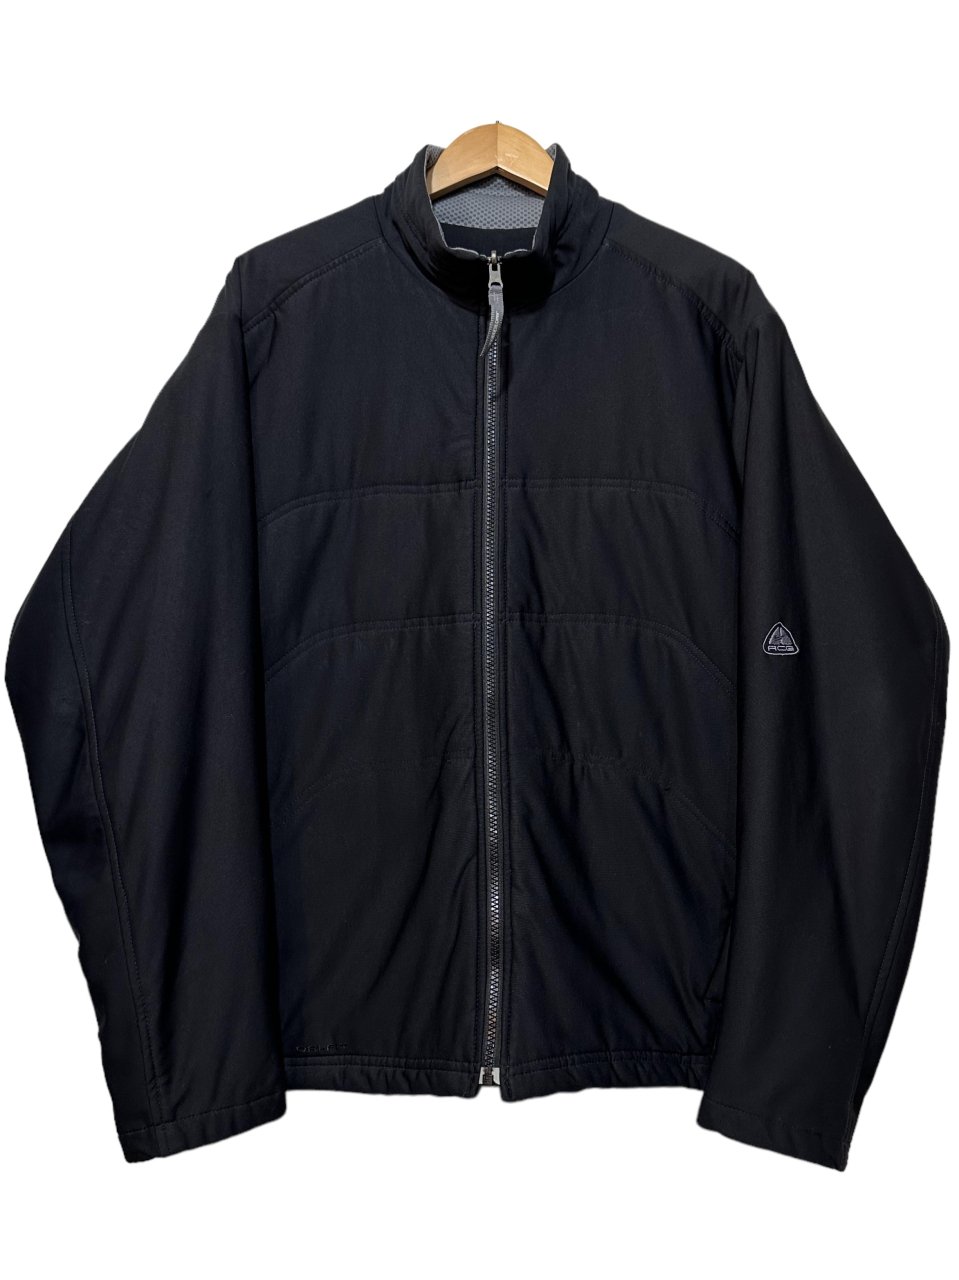 NIKE ACG 00’s double zip puffer jacket